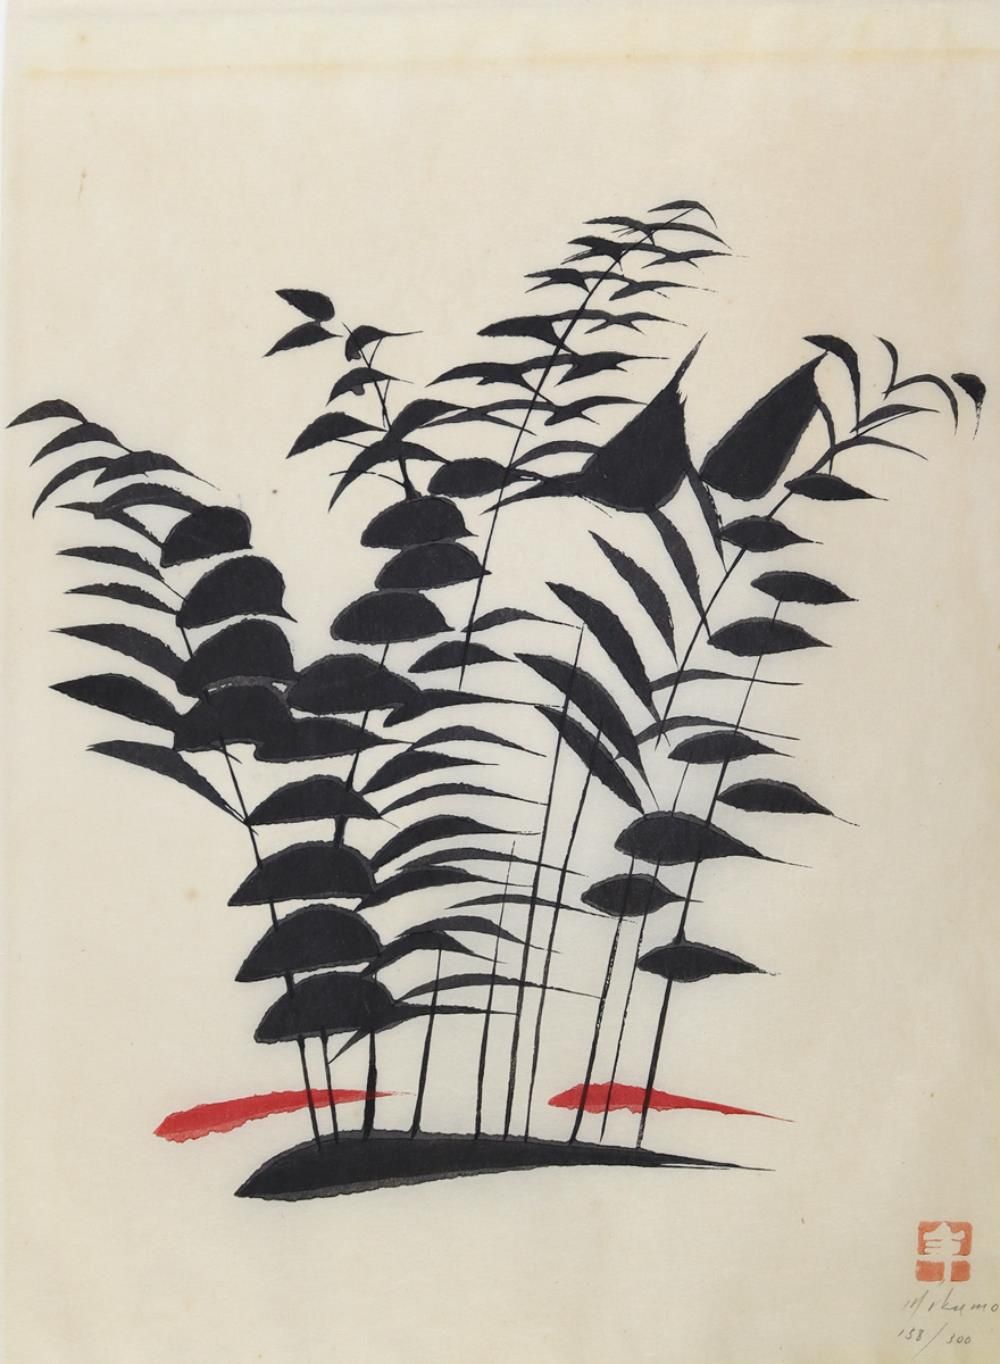 Inagaki, Nenjiro (auch: Toshijiro Inagaki, 1902-1963) atribuido. Representación &hellip;